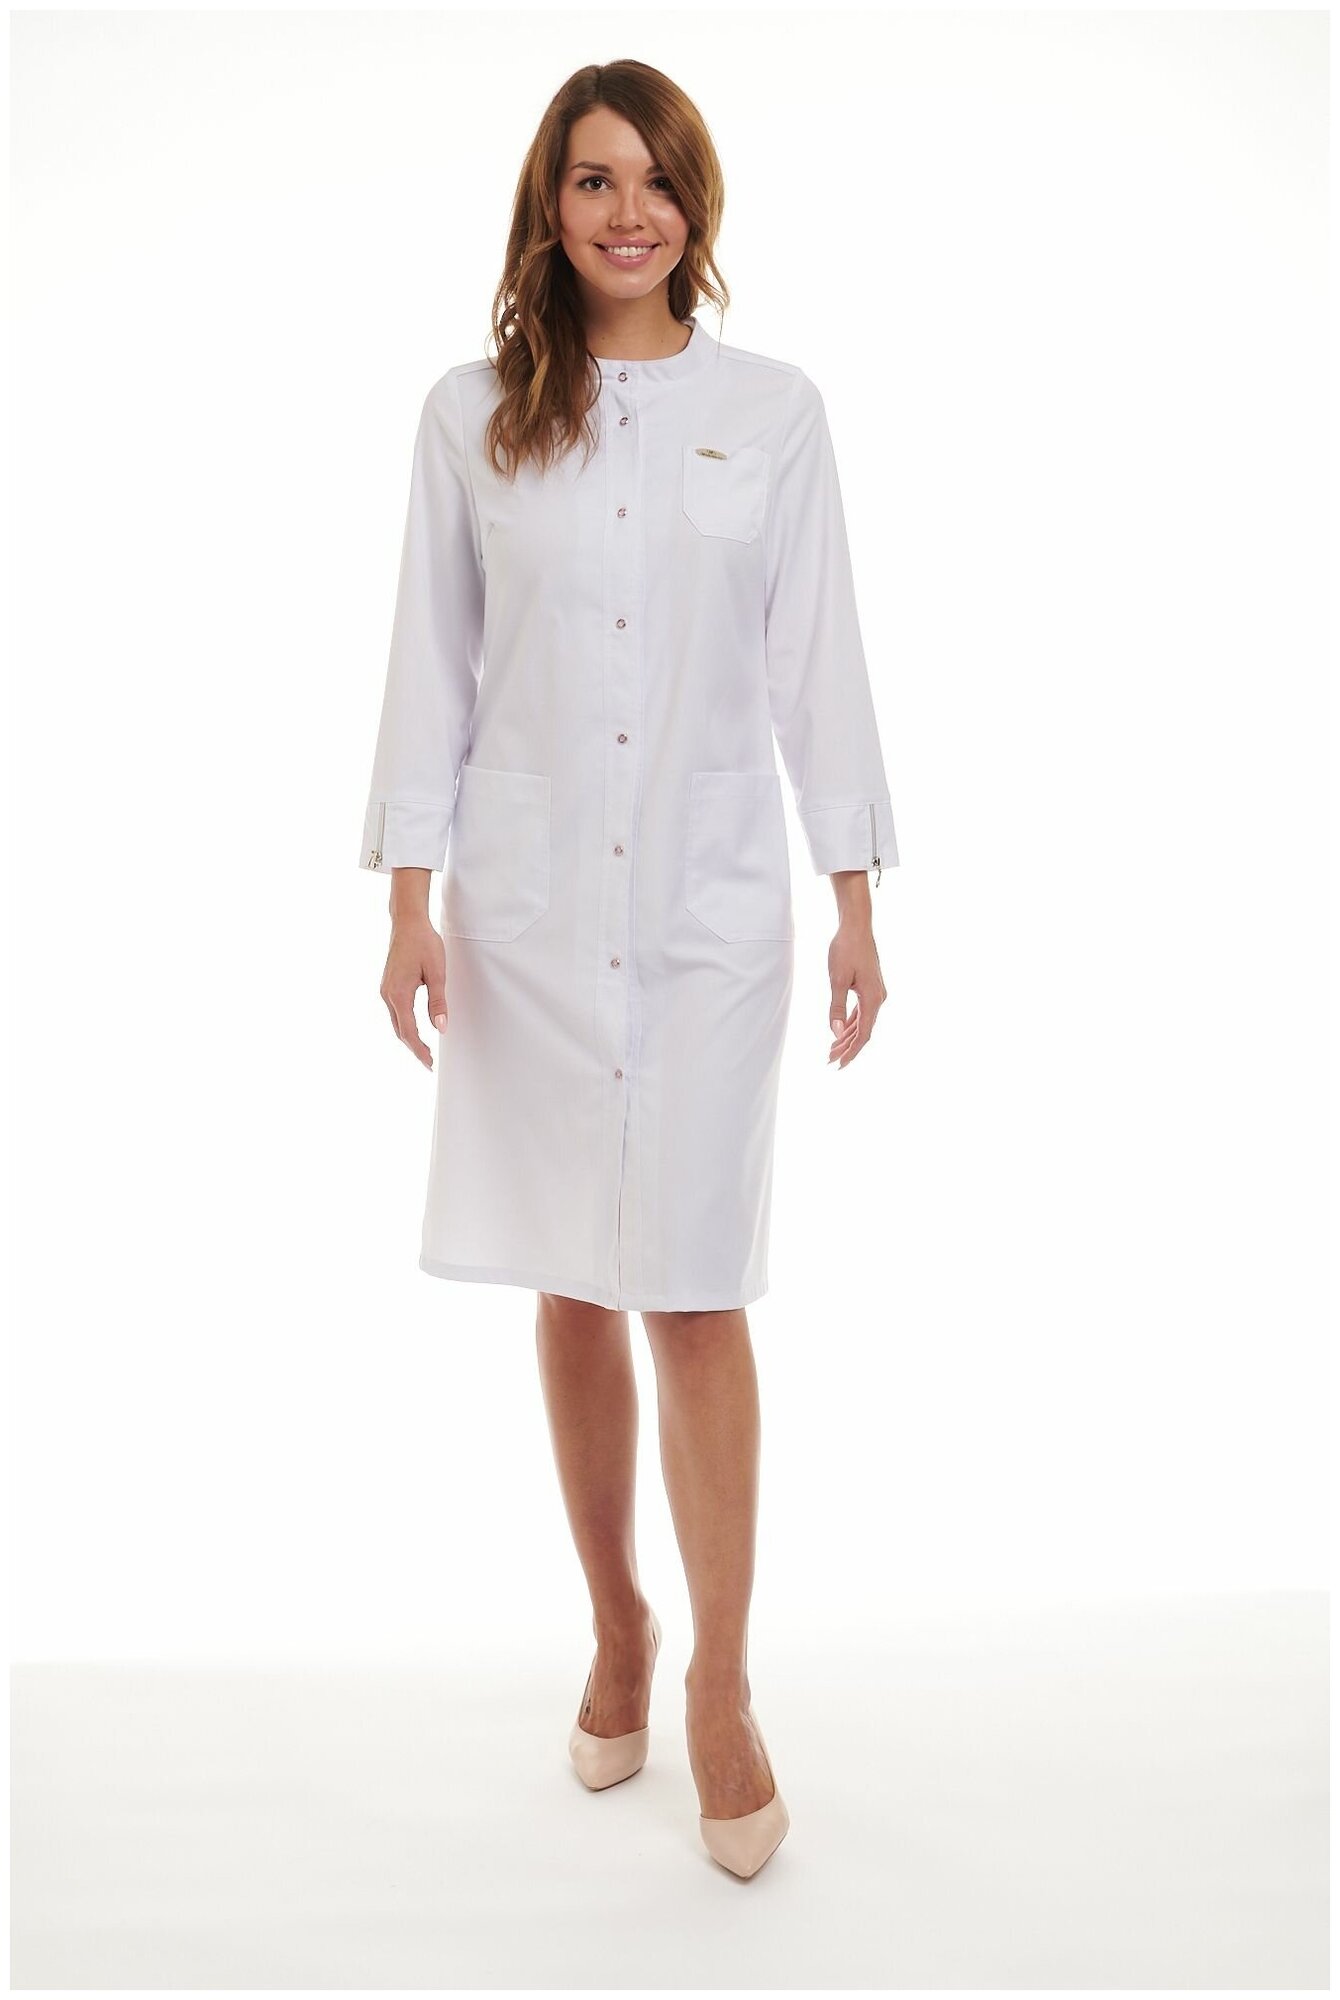 Медицинская одежда женская. Халат белый стильный с рукавом 7/8 на кнопках летний. Одежда медработников. Спецодежда для врачей. Форма медиков. Медодежда. Униформа мед персонала.